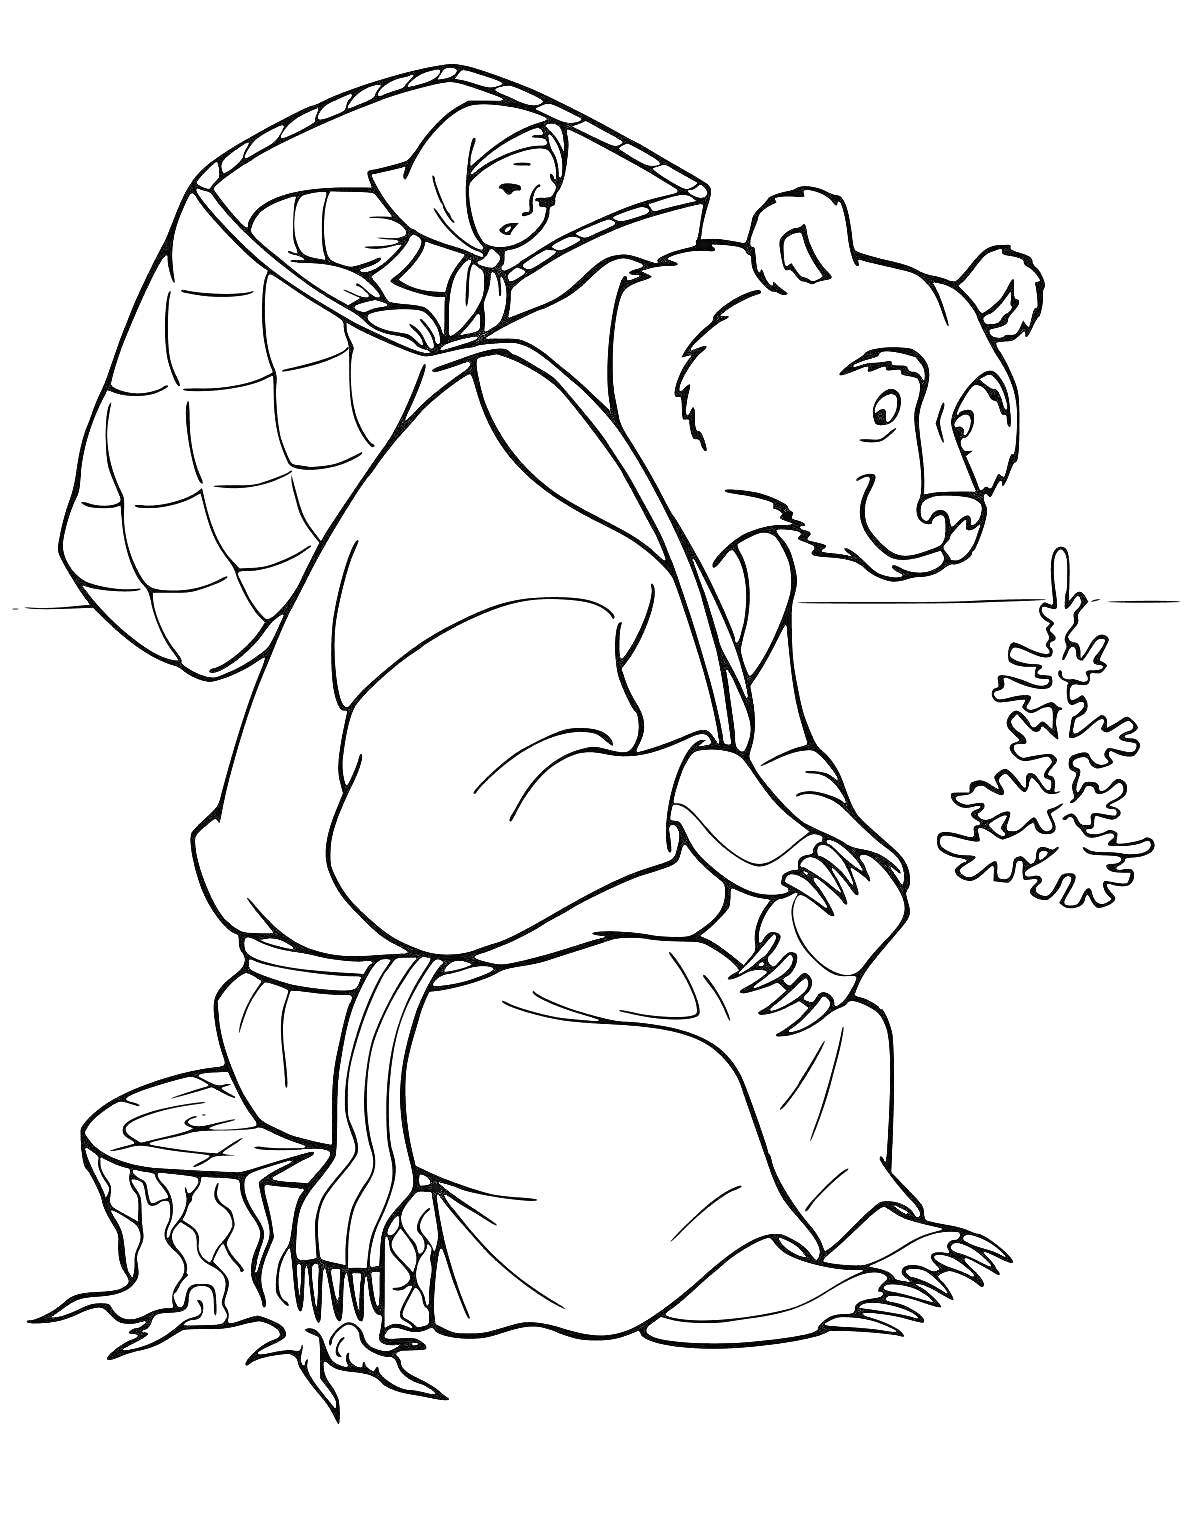 Раскраска Девочка в корзине на спине у медведя, белка на пеньке и ёлка